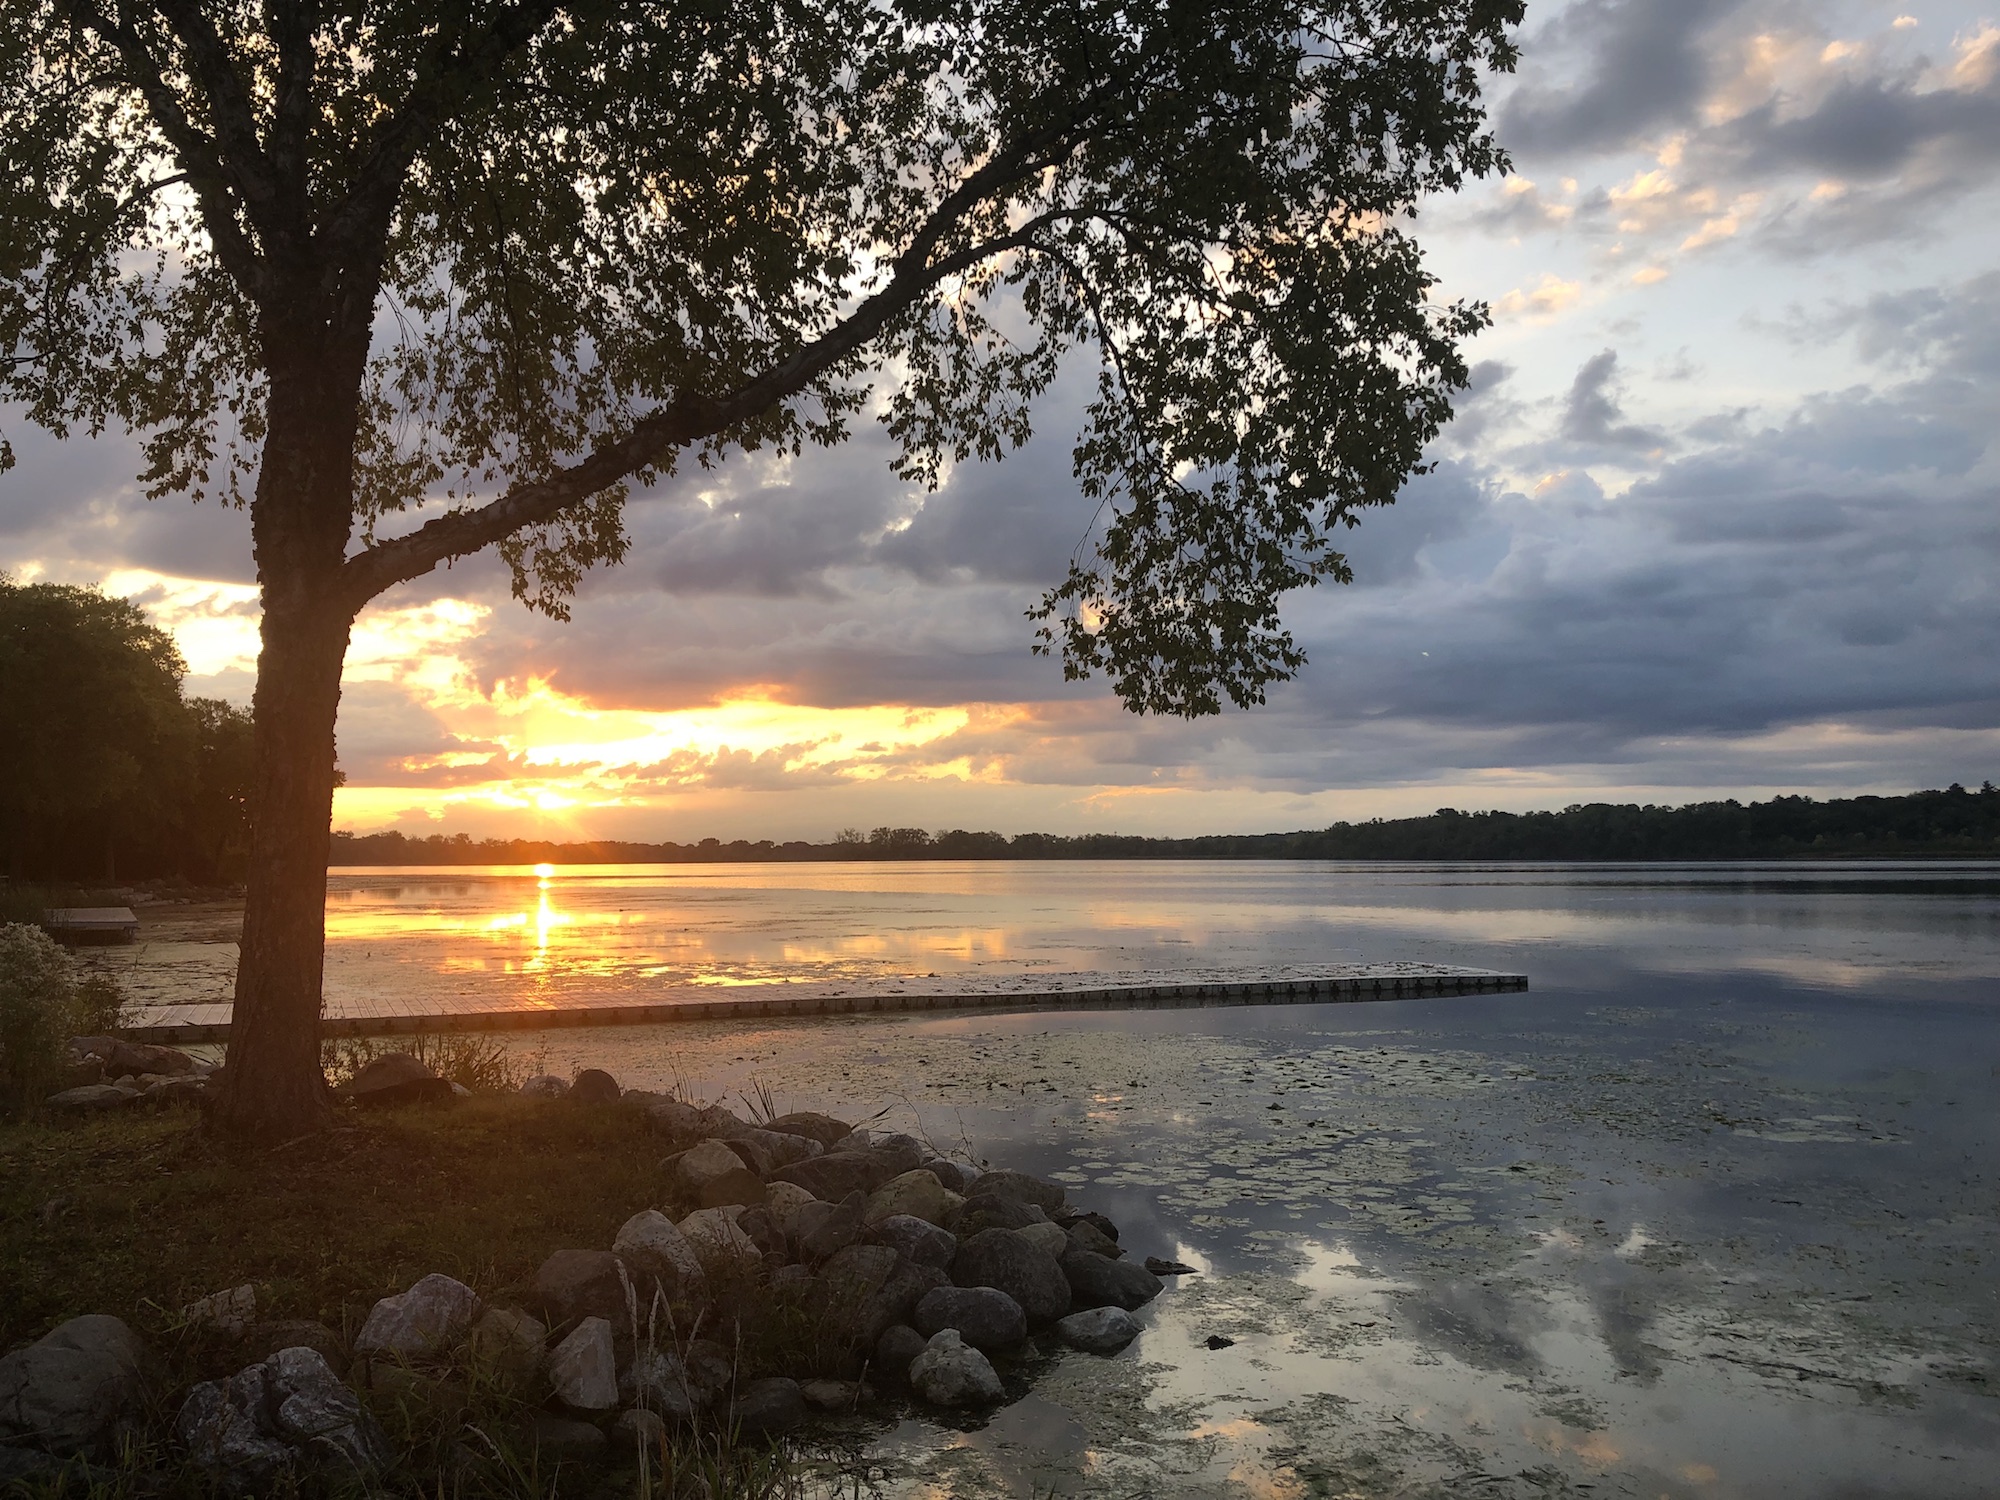 Lake Wingra on September 24, 2019.